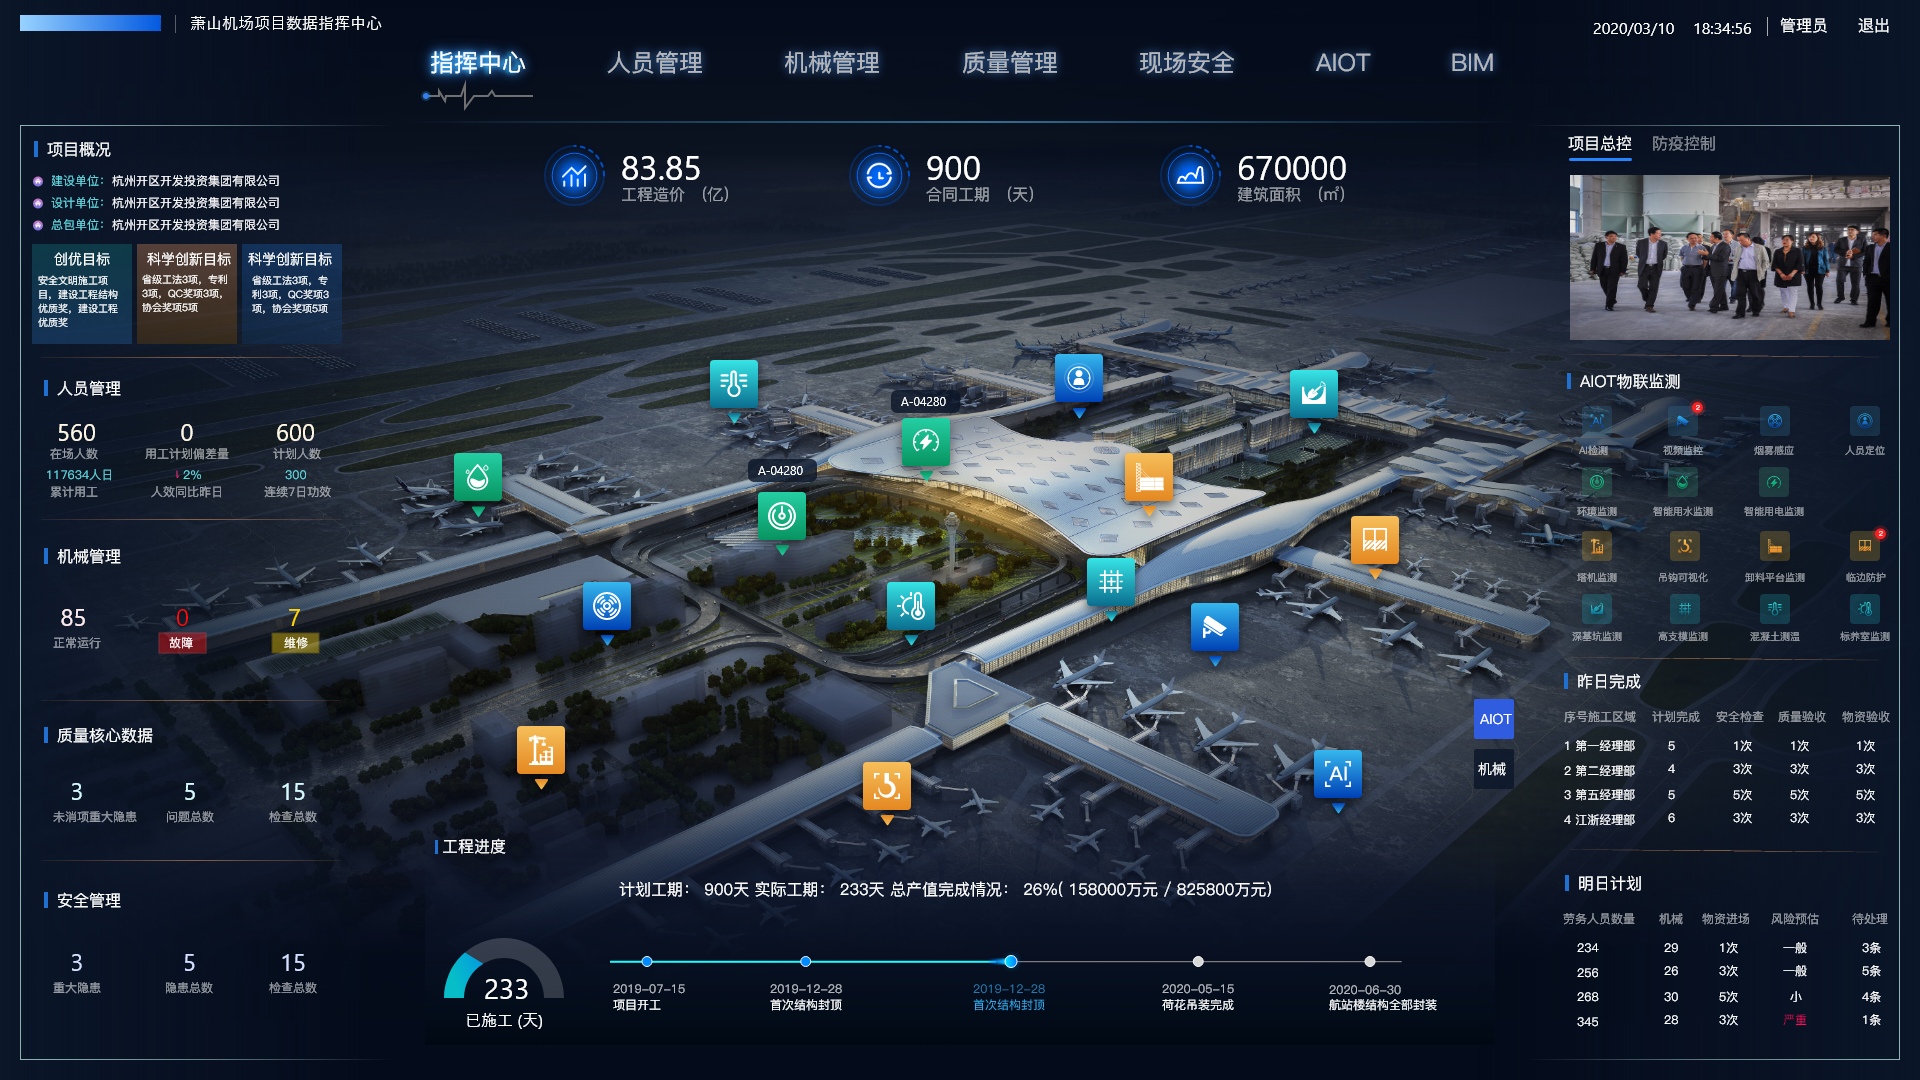 杭州萧山机场智慧平台建设